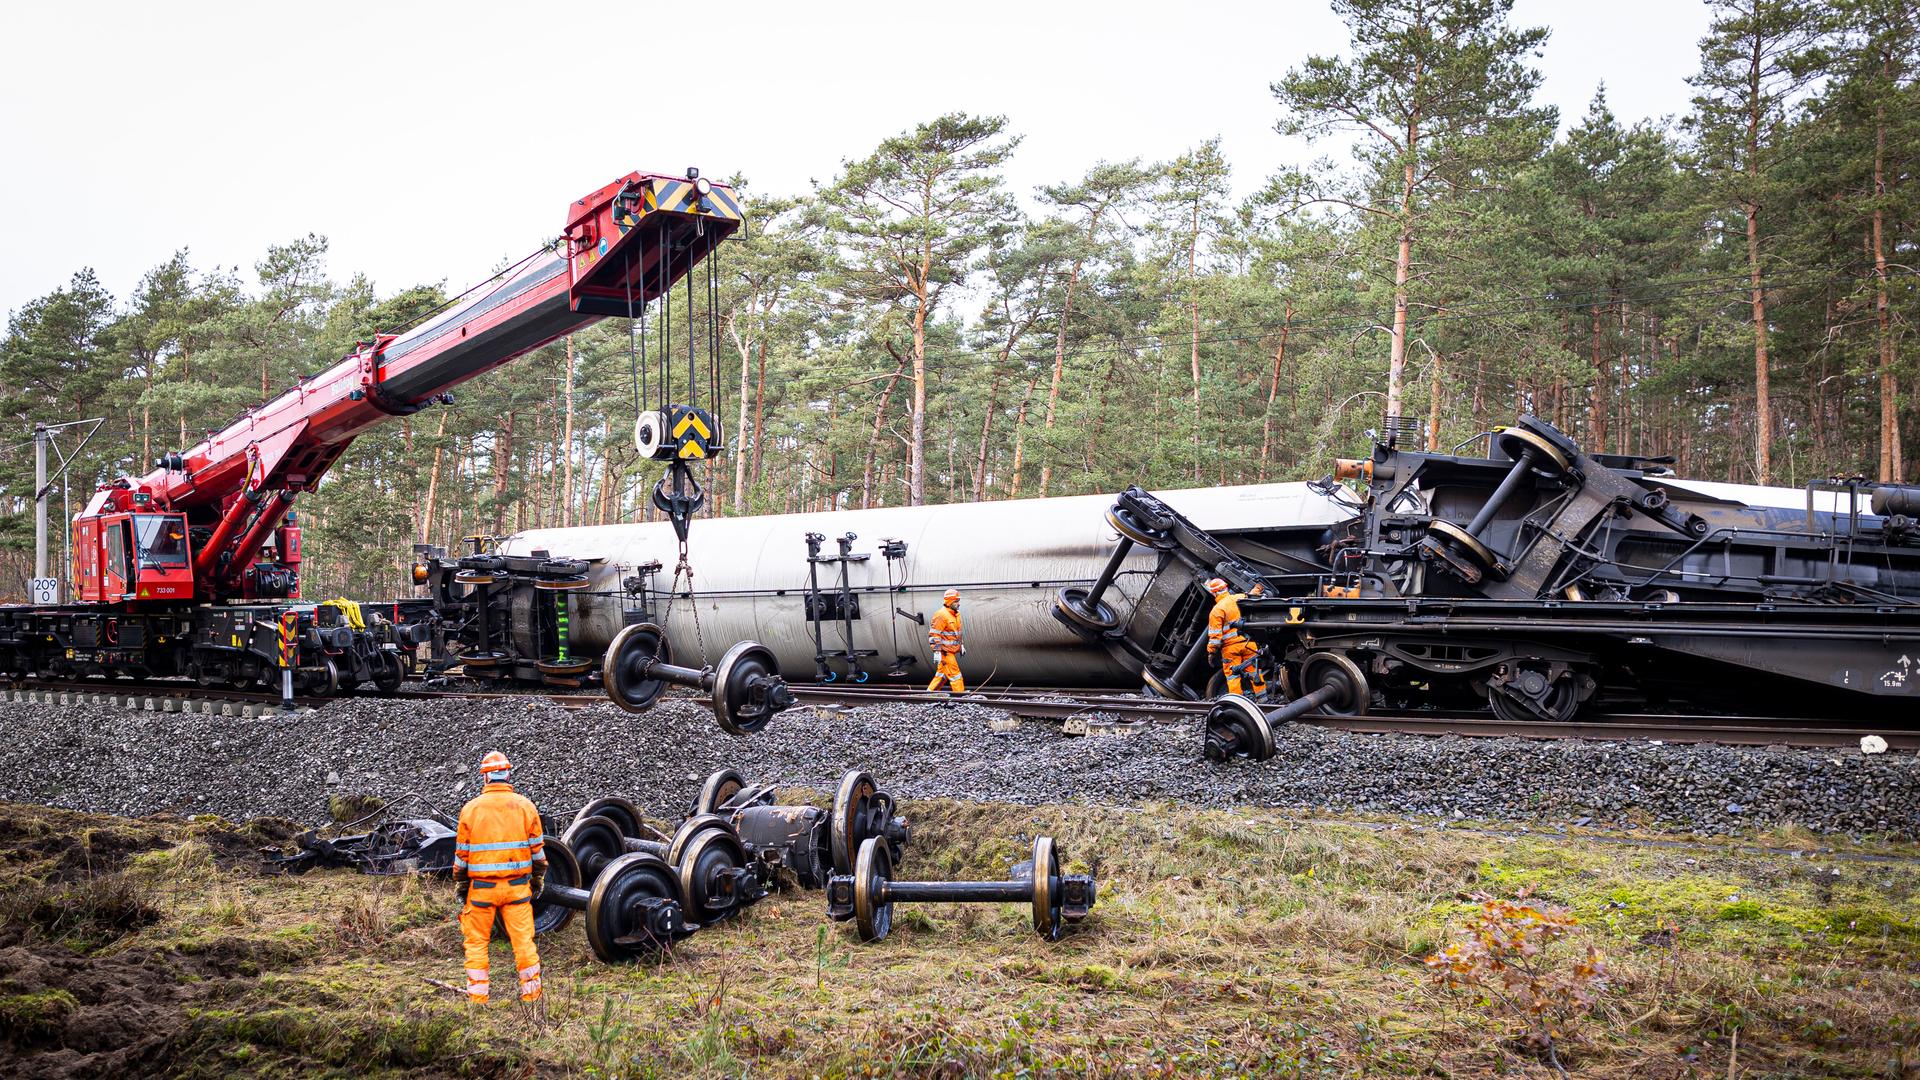 Güterzugunfall bei Gifhorn - Aufräumarbeiten schreiten voran